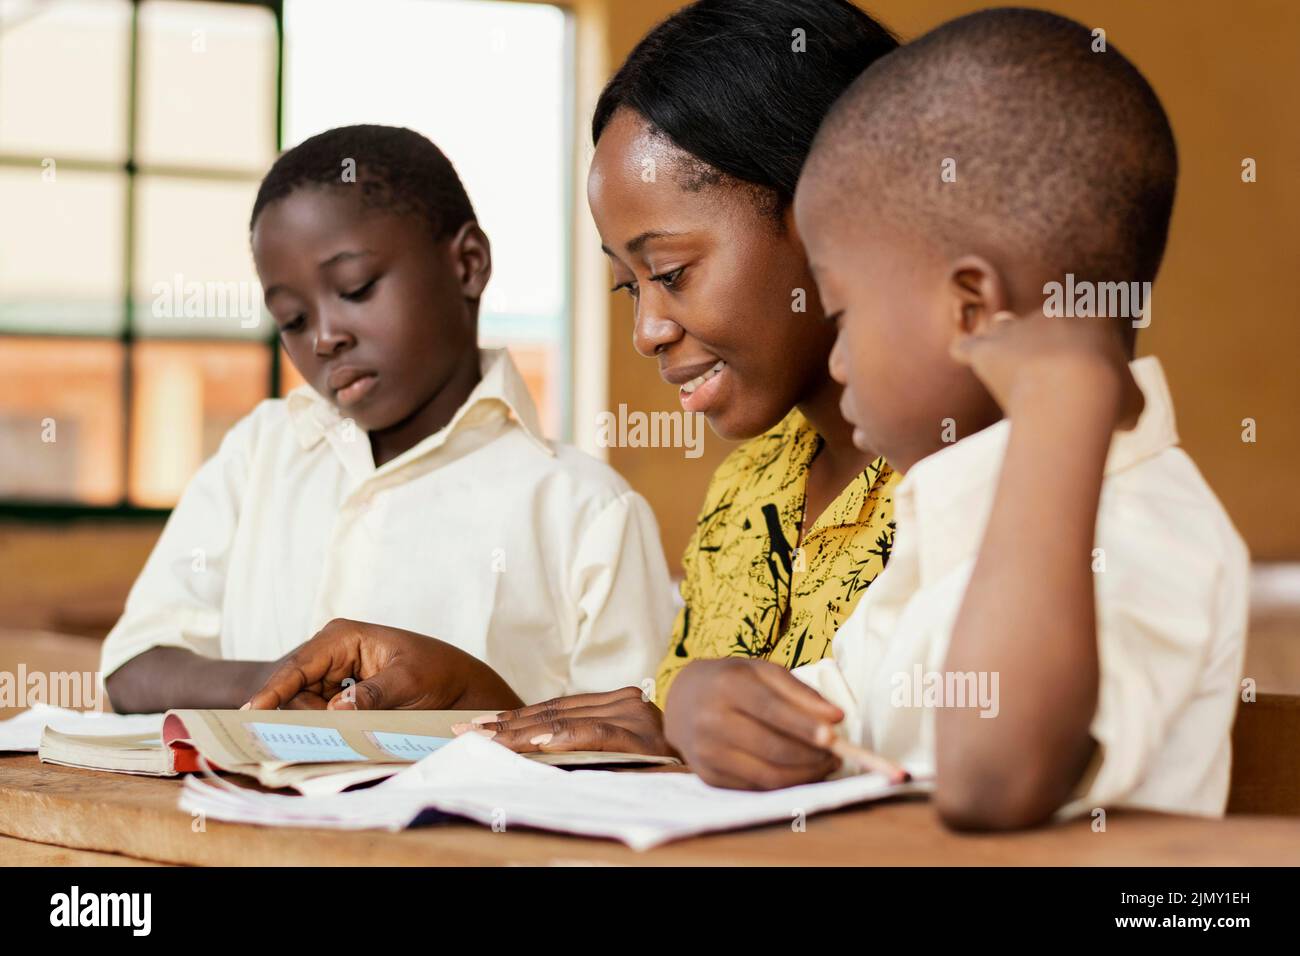 Teacher helping kids class Stock Photo